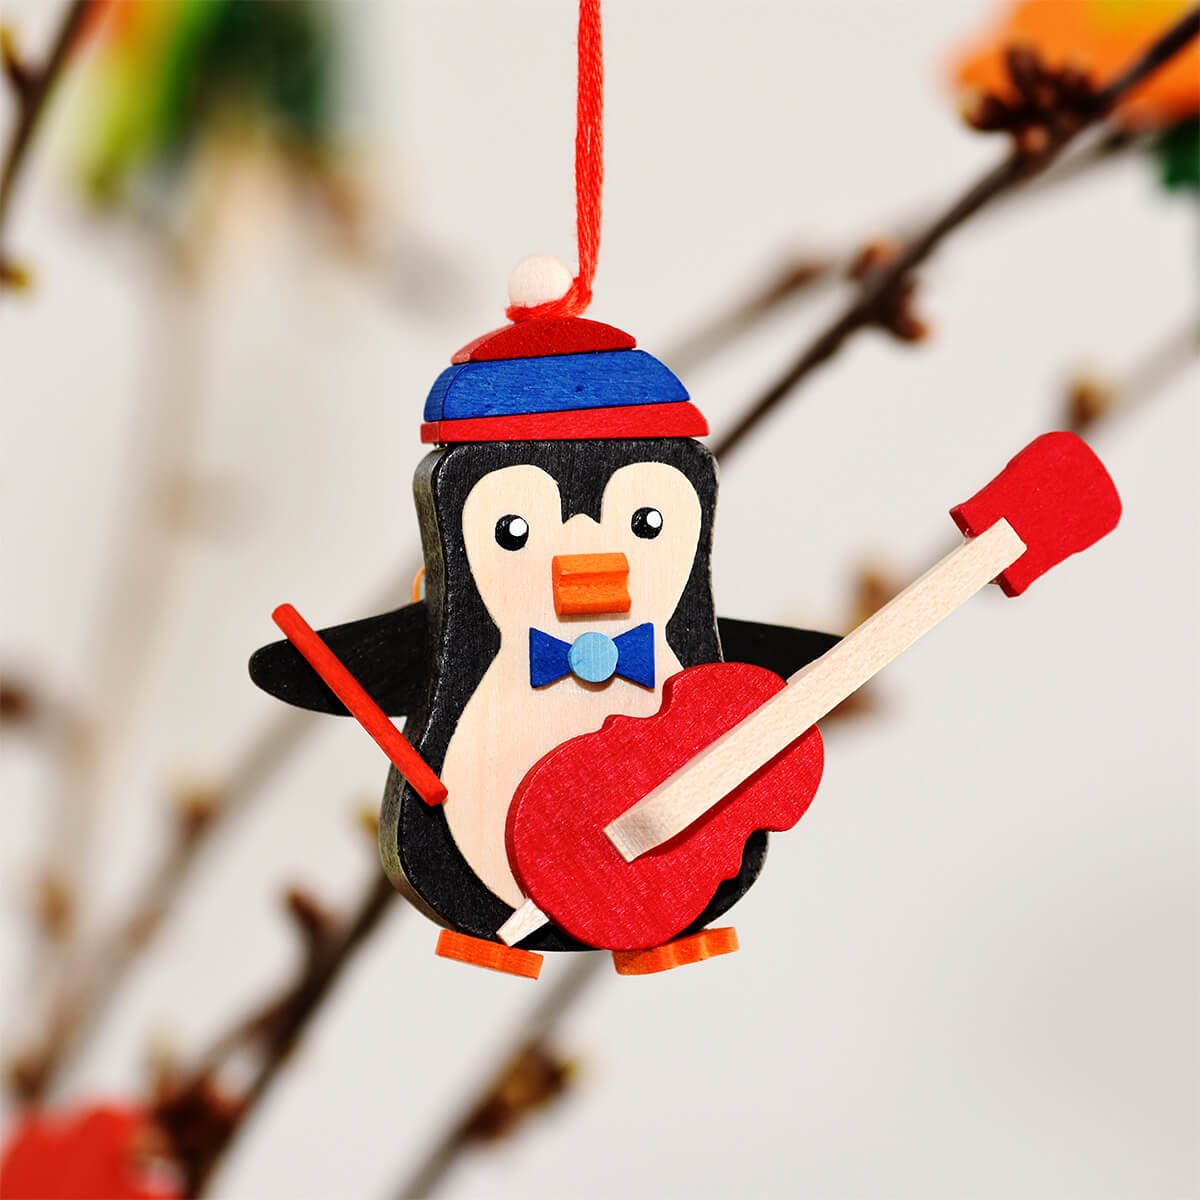 Pinguin als Baumschmuck mit Trommel